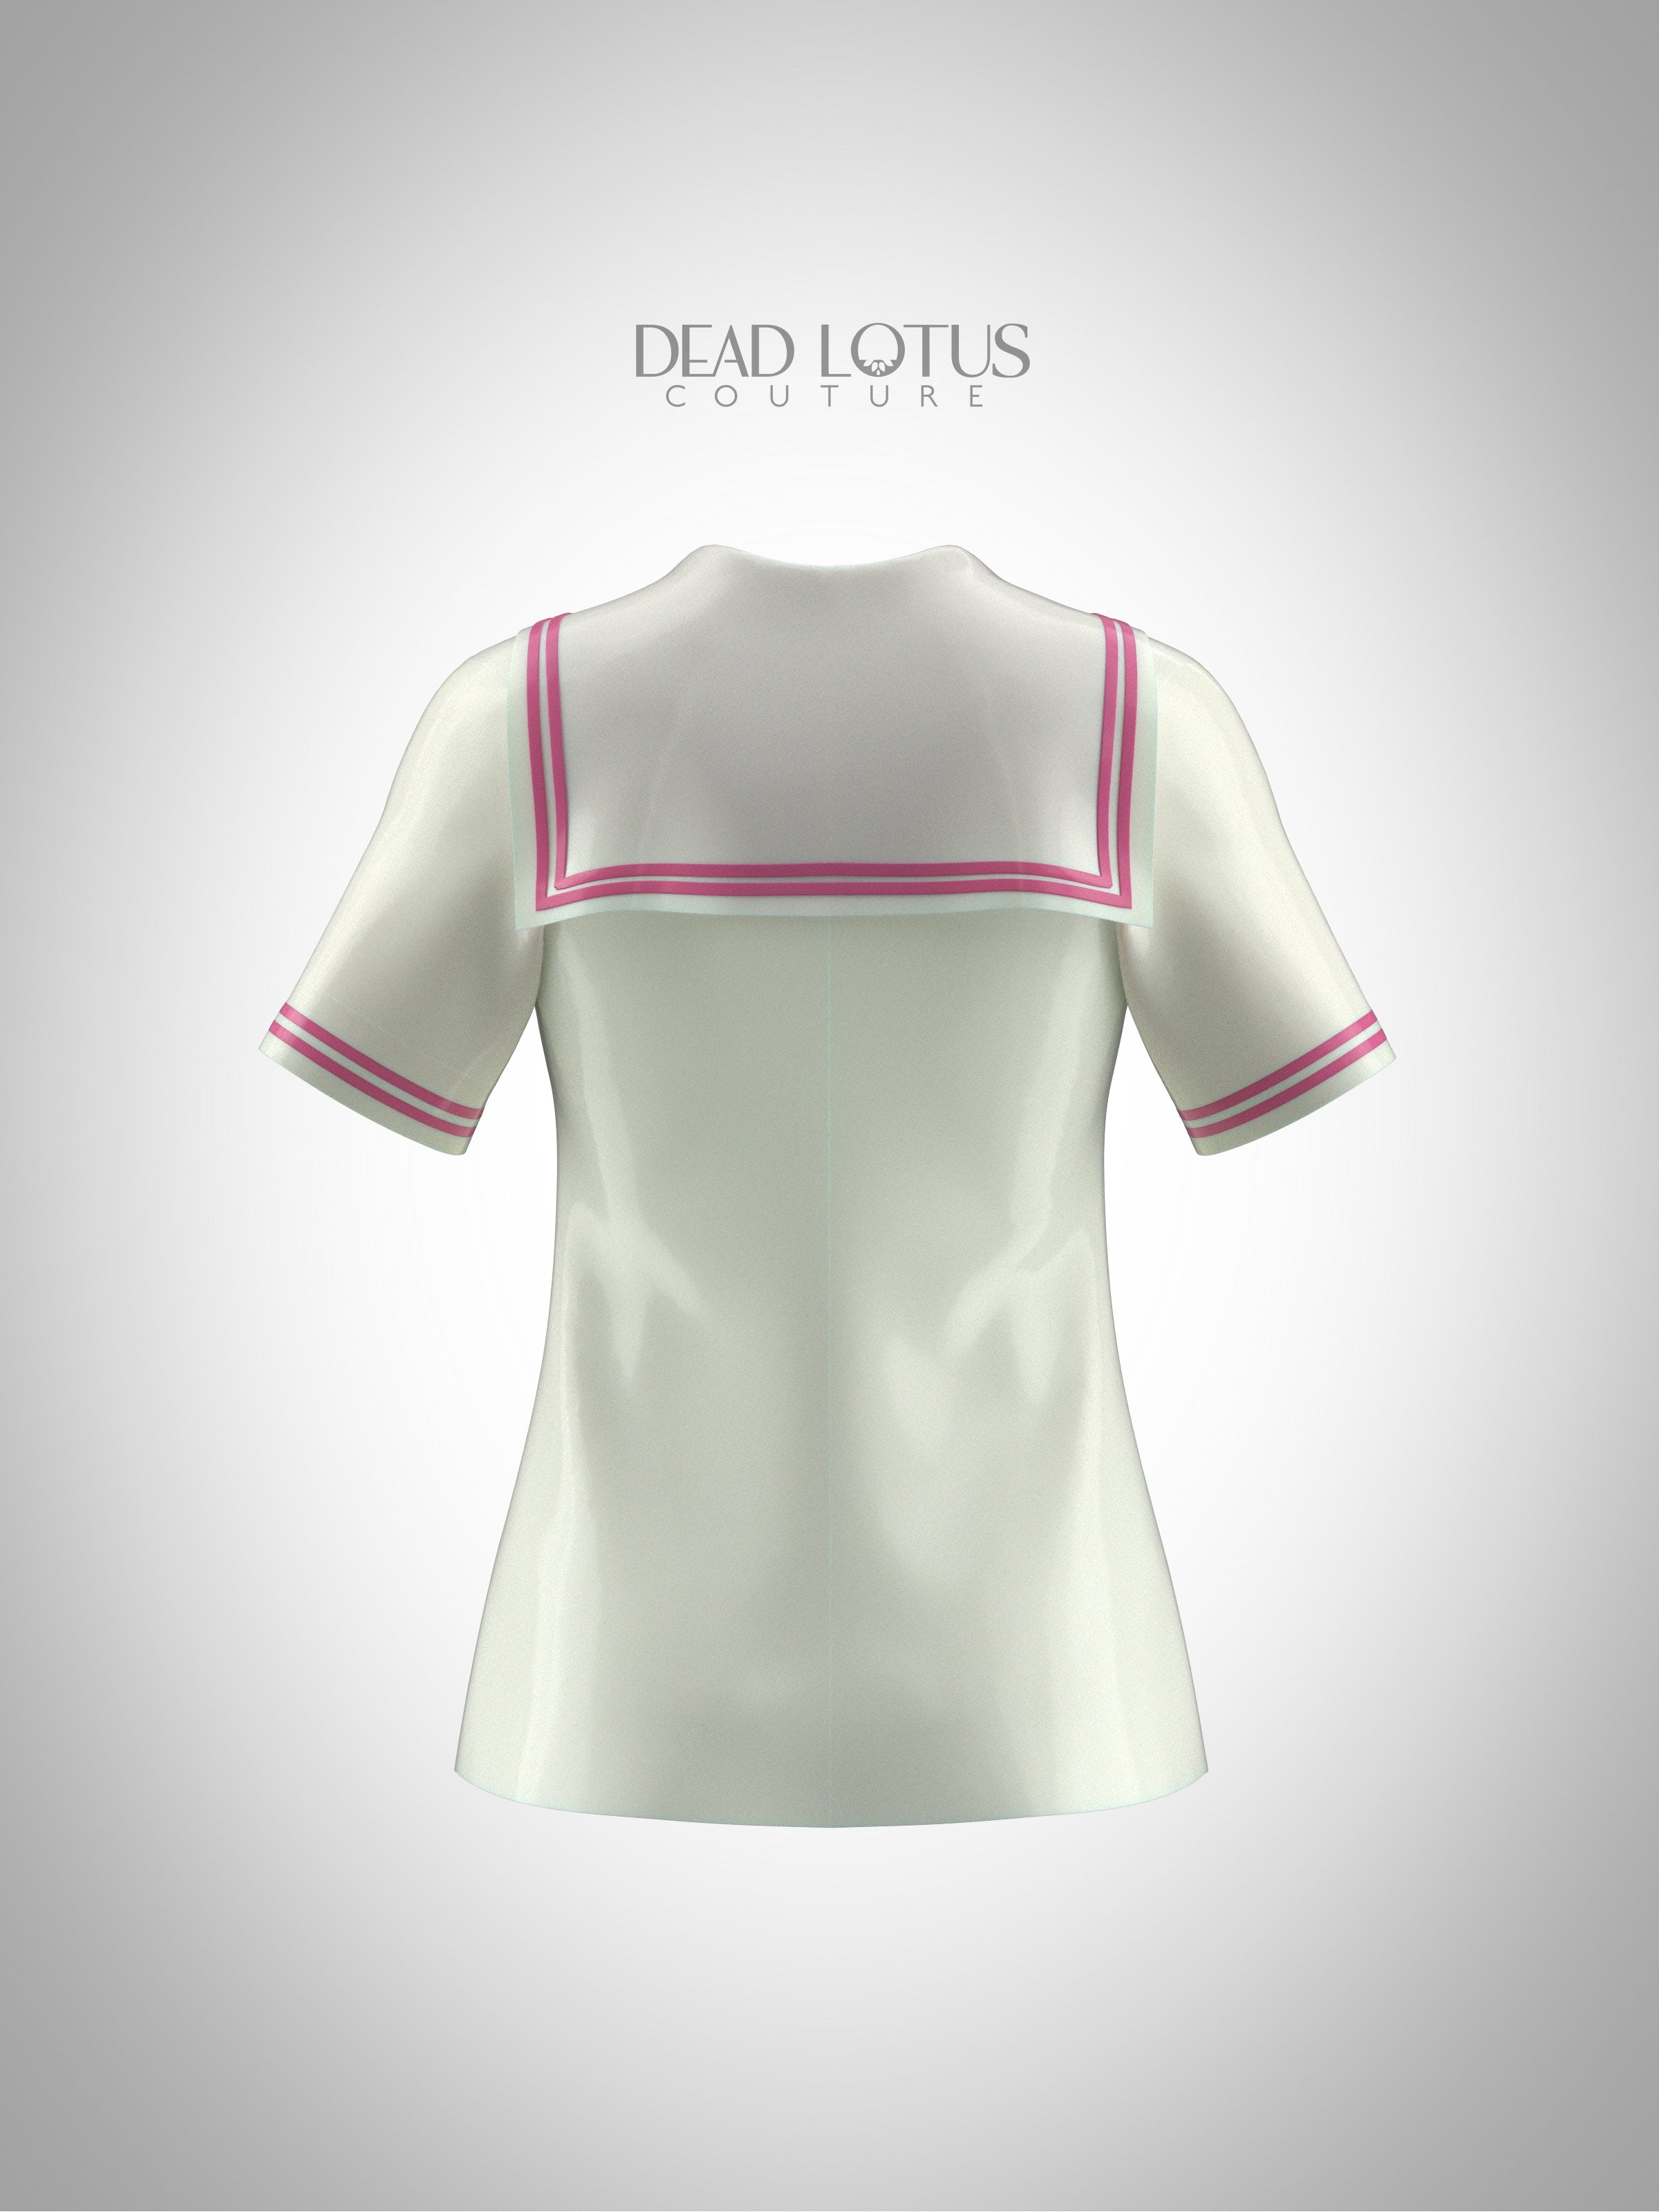 OBJECTICA Button Up Sailor Shirt | Dead Lotus – Dead Lotus Couture